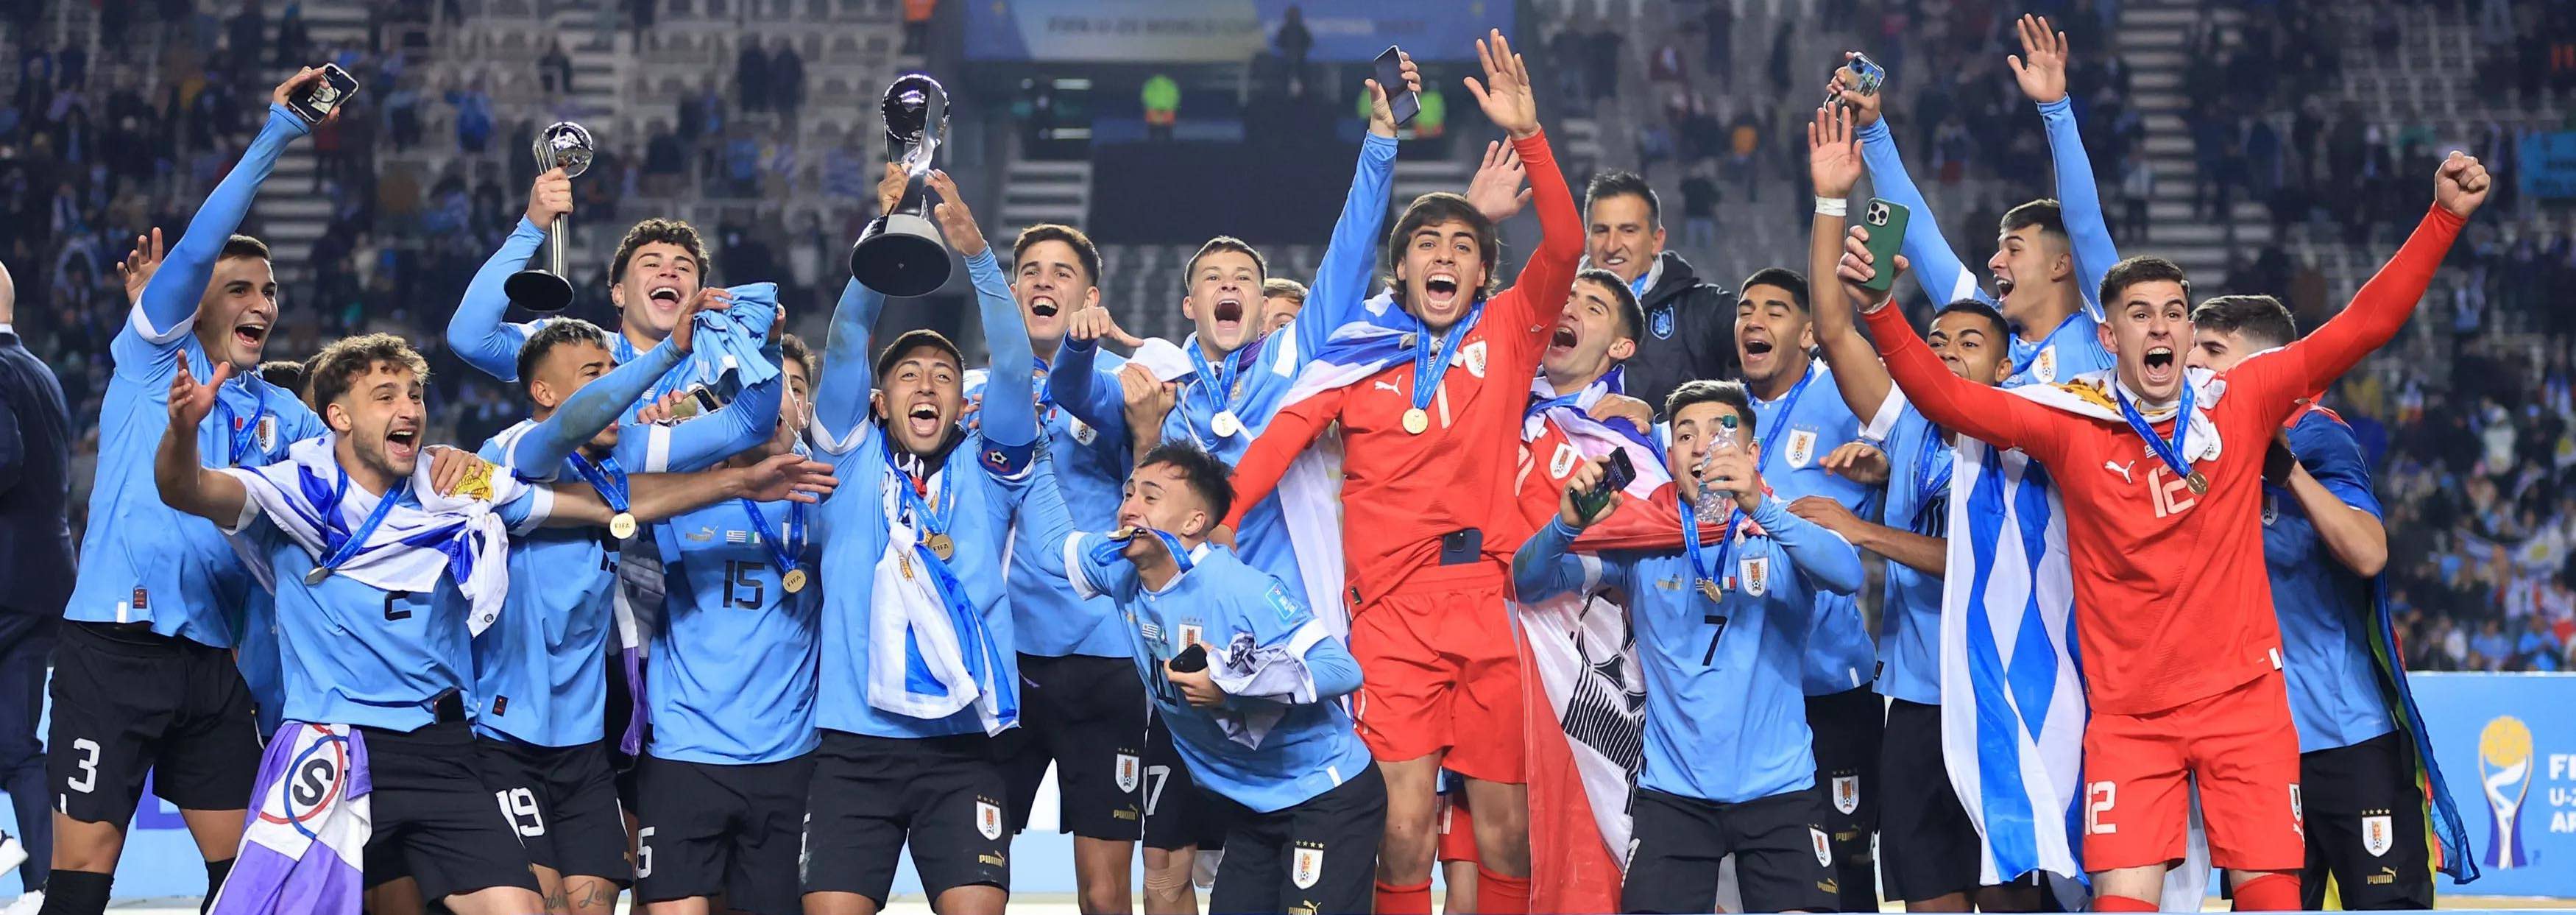 Piala Dunia U20: Uruguay Jadi Kampiun Usai Menang Tipis 1-0 atas Italia